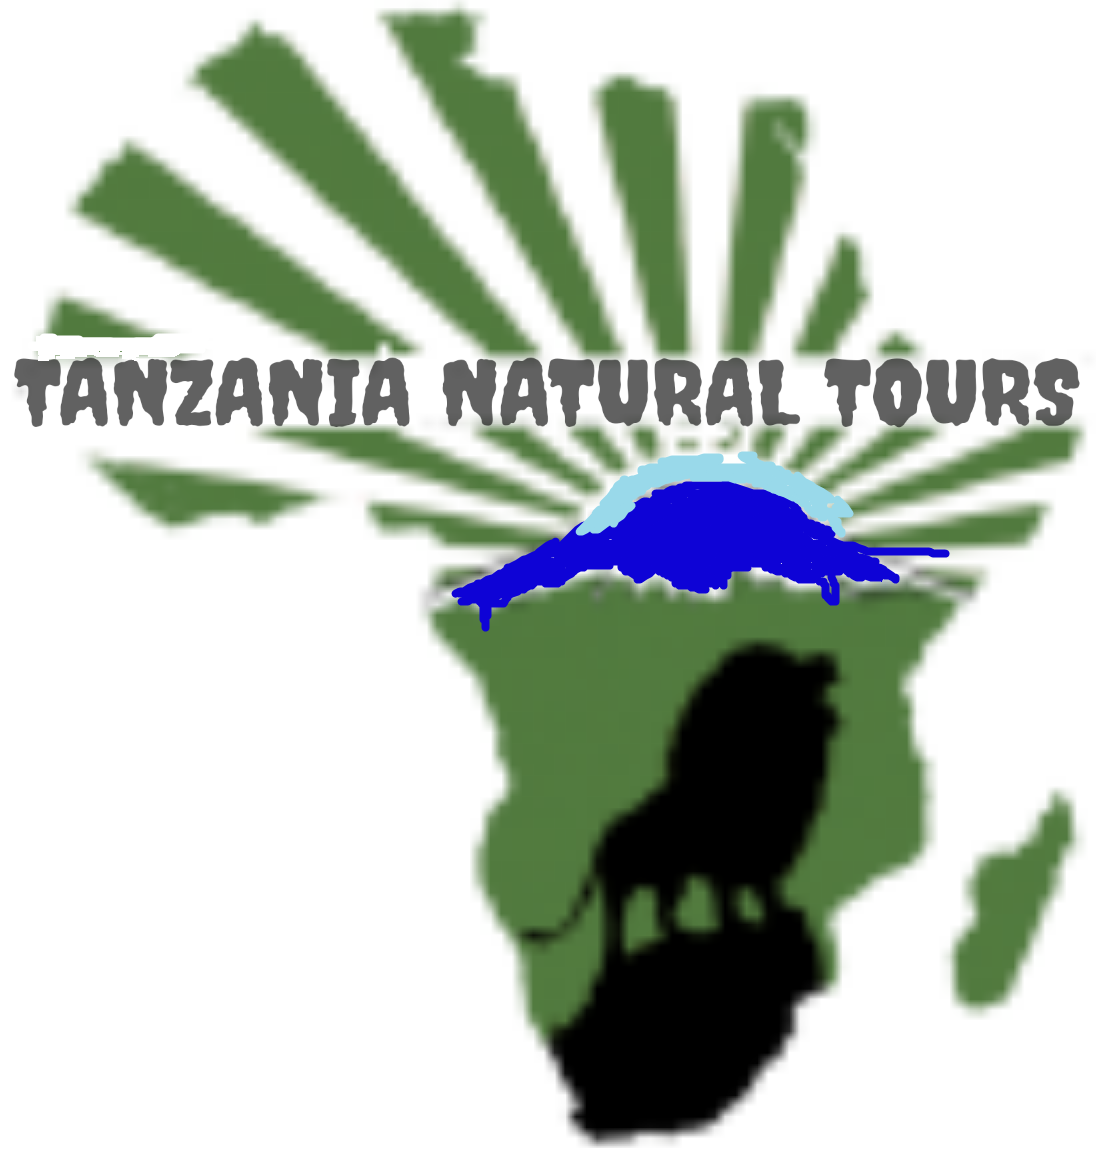 Tanzania Natural Tours